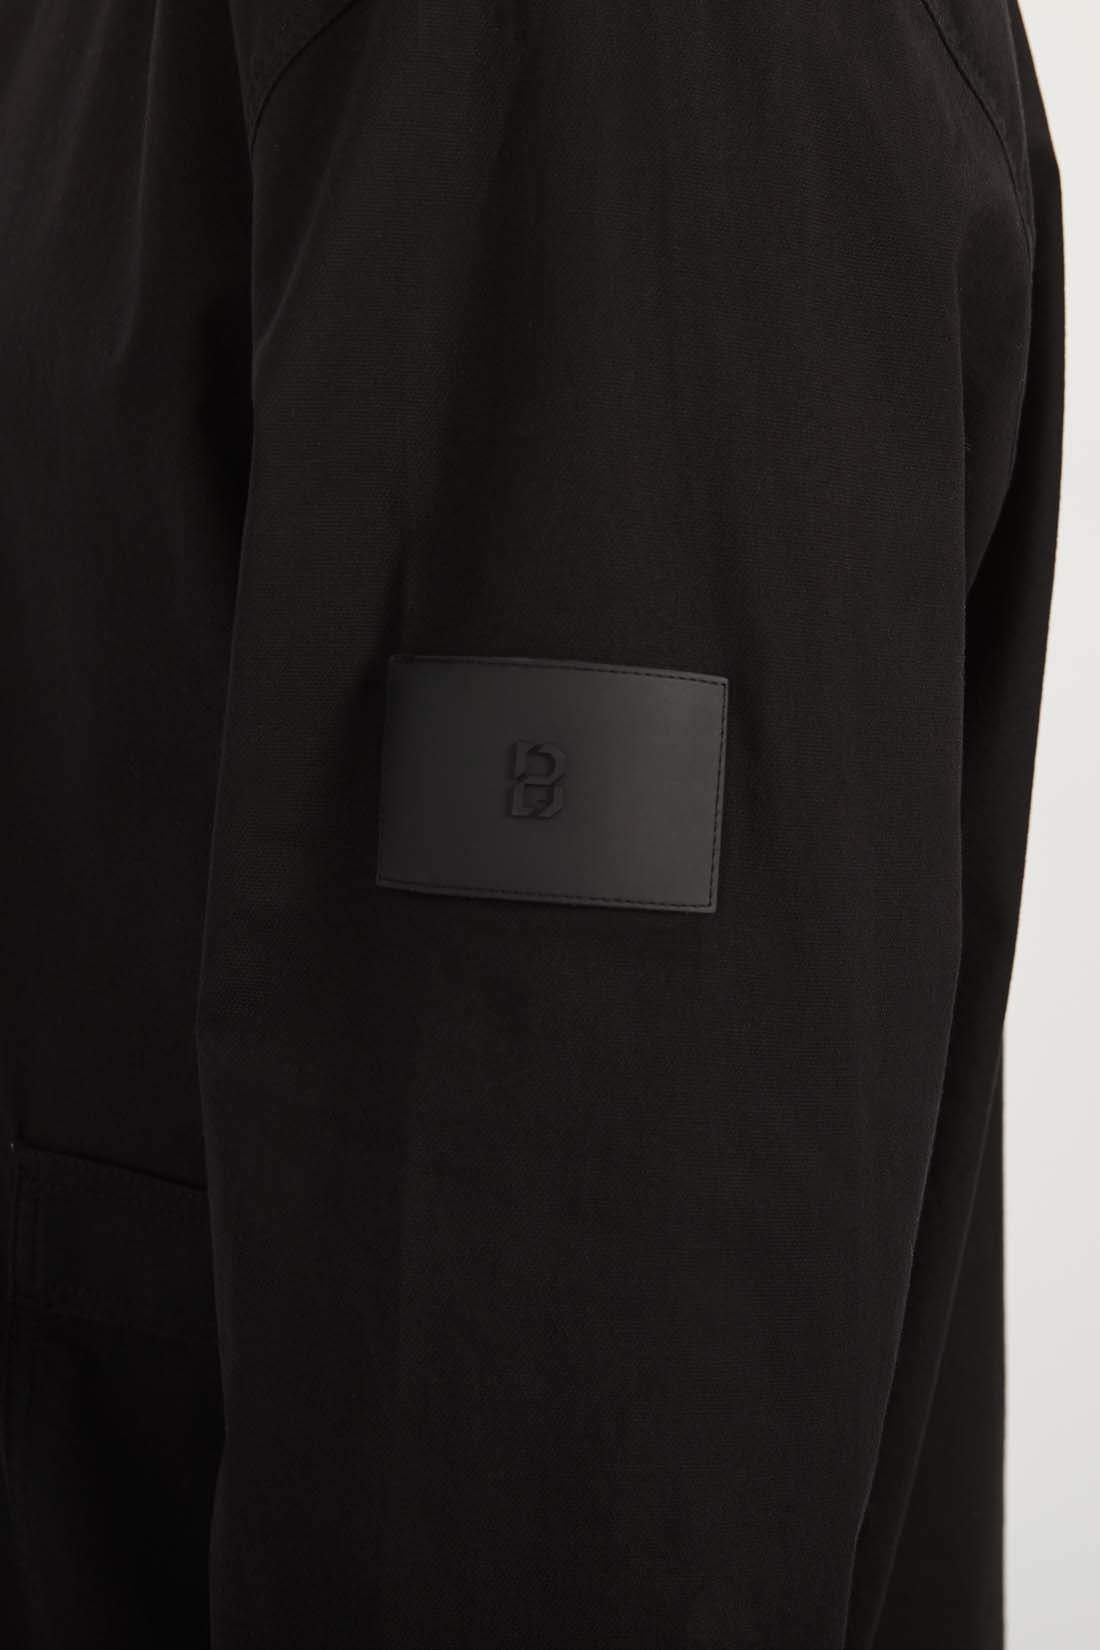 Свитшот мужской Baon B6122007 черный S